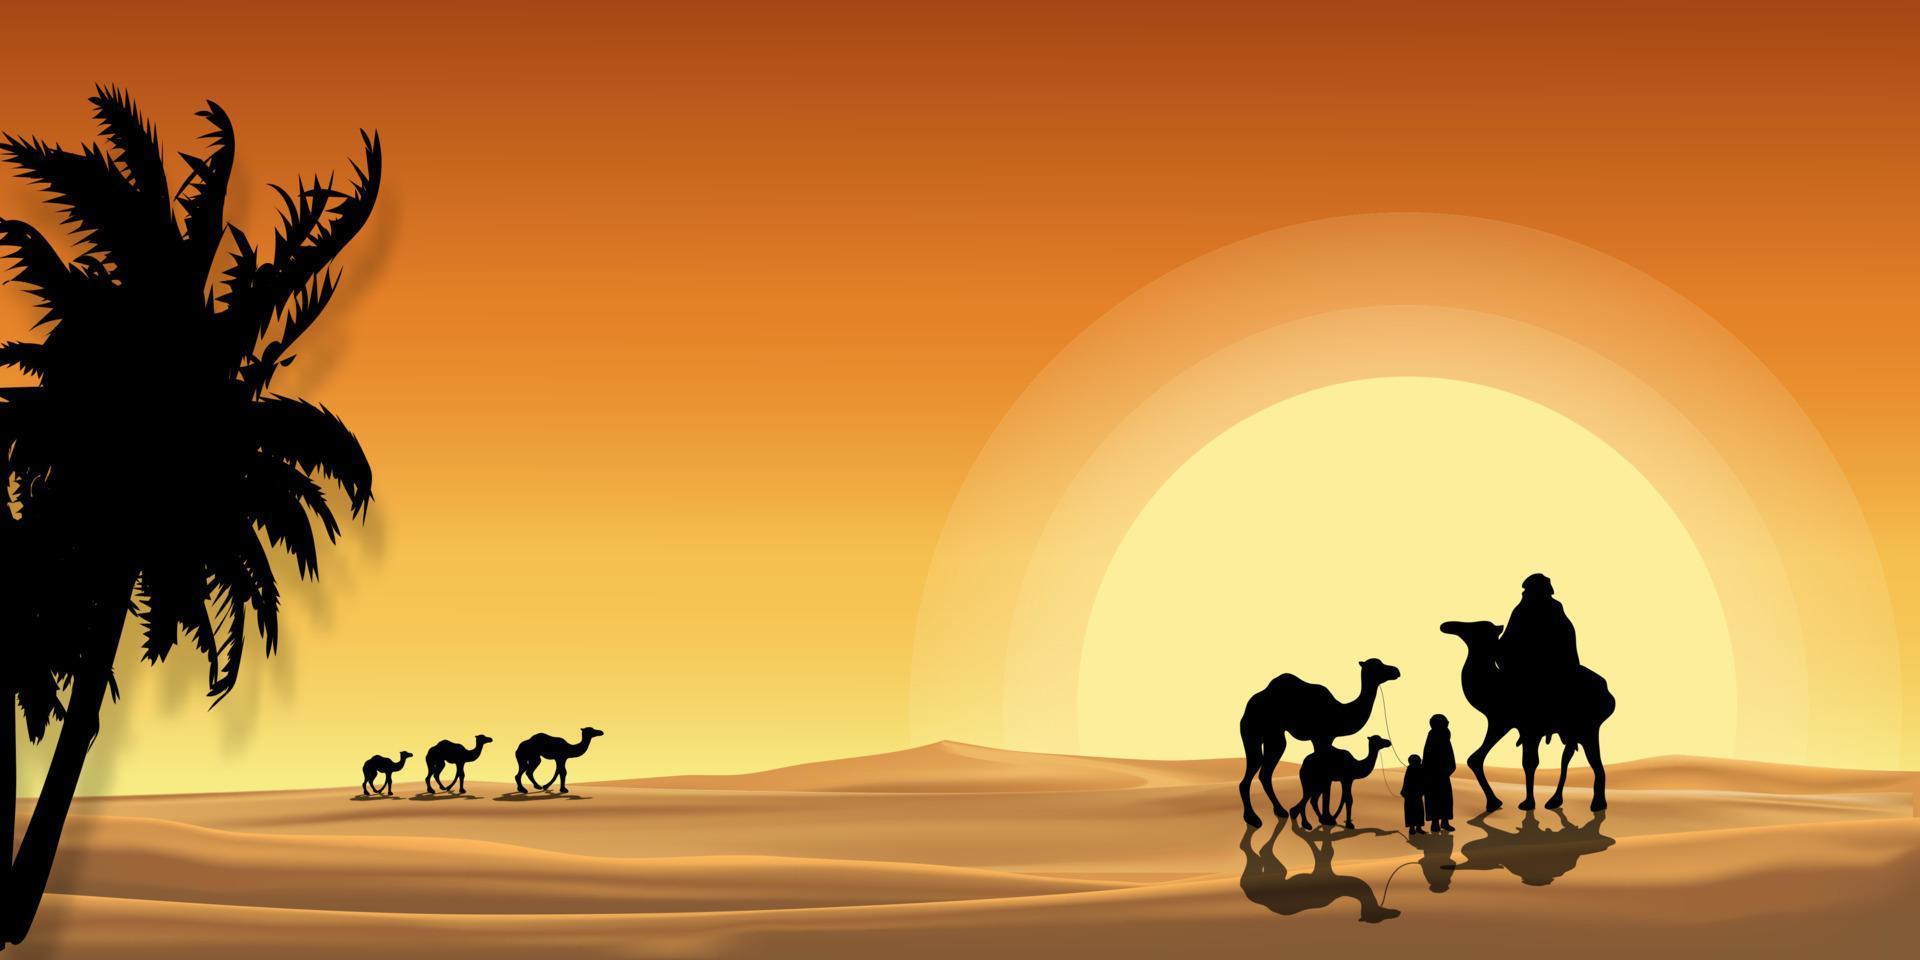 paysage désertique vectoriel coucher de soleil avec caravane musulmane chevauchant des chameaux traversant les dunes de sable avec réflexion de la lumière du soleil orange, eid mubarak ou ramadan kareem carte de voeux